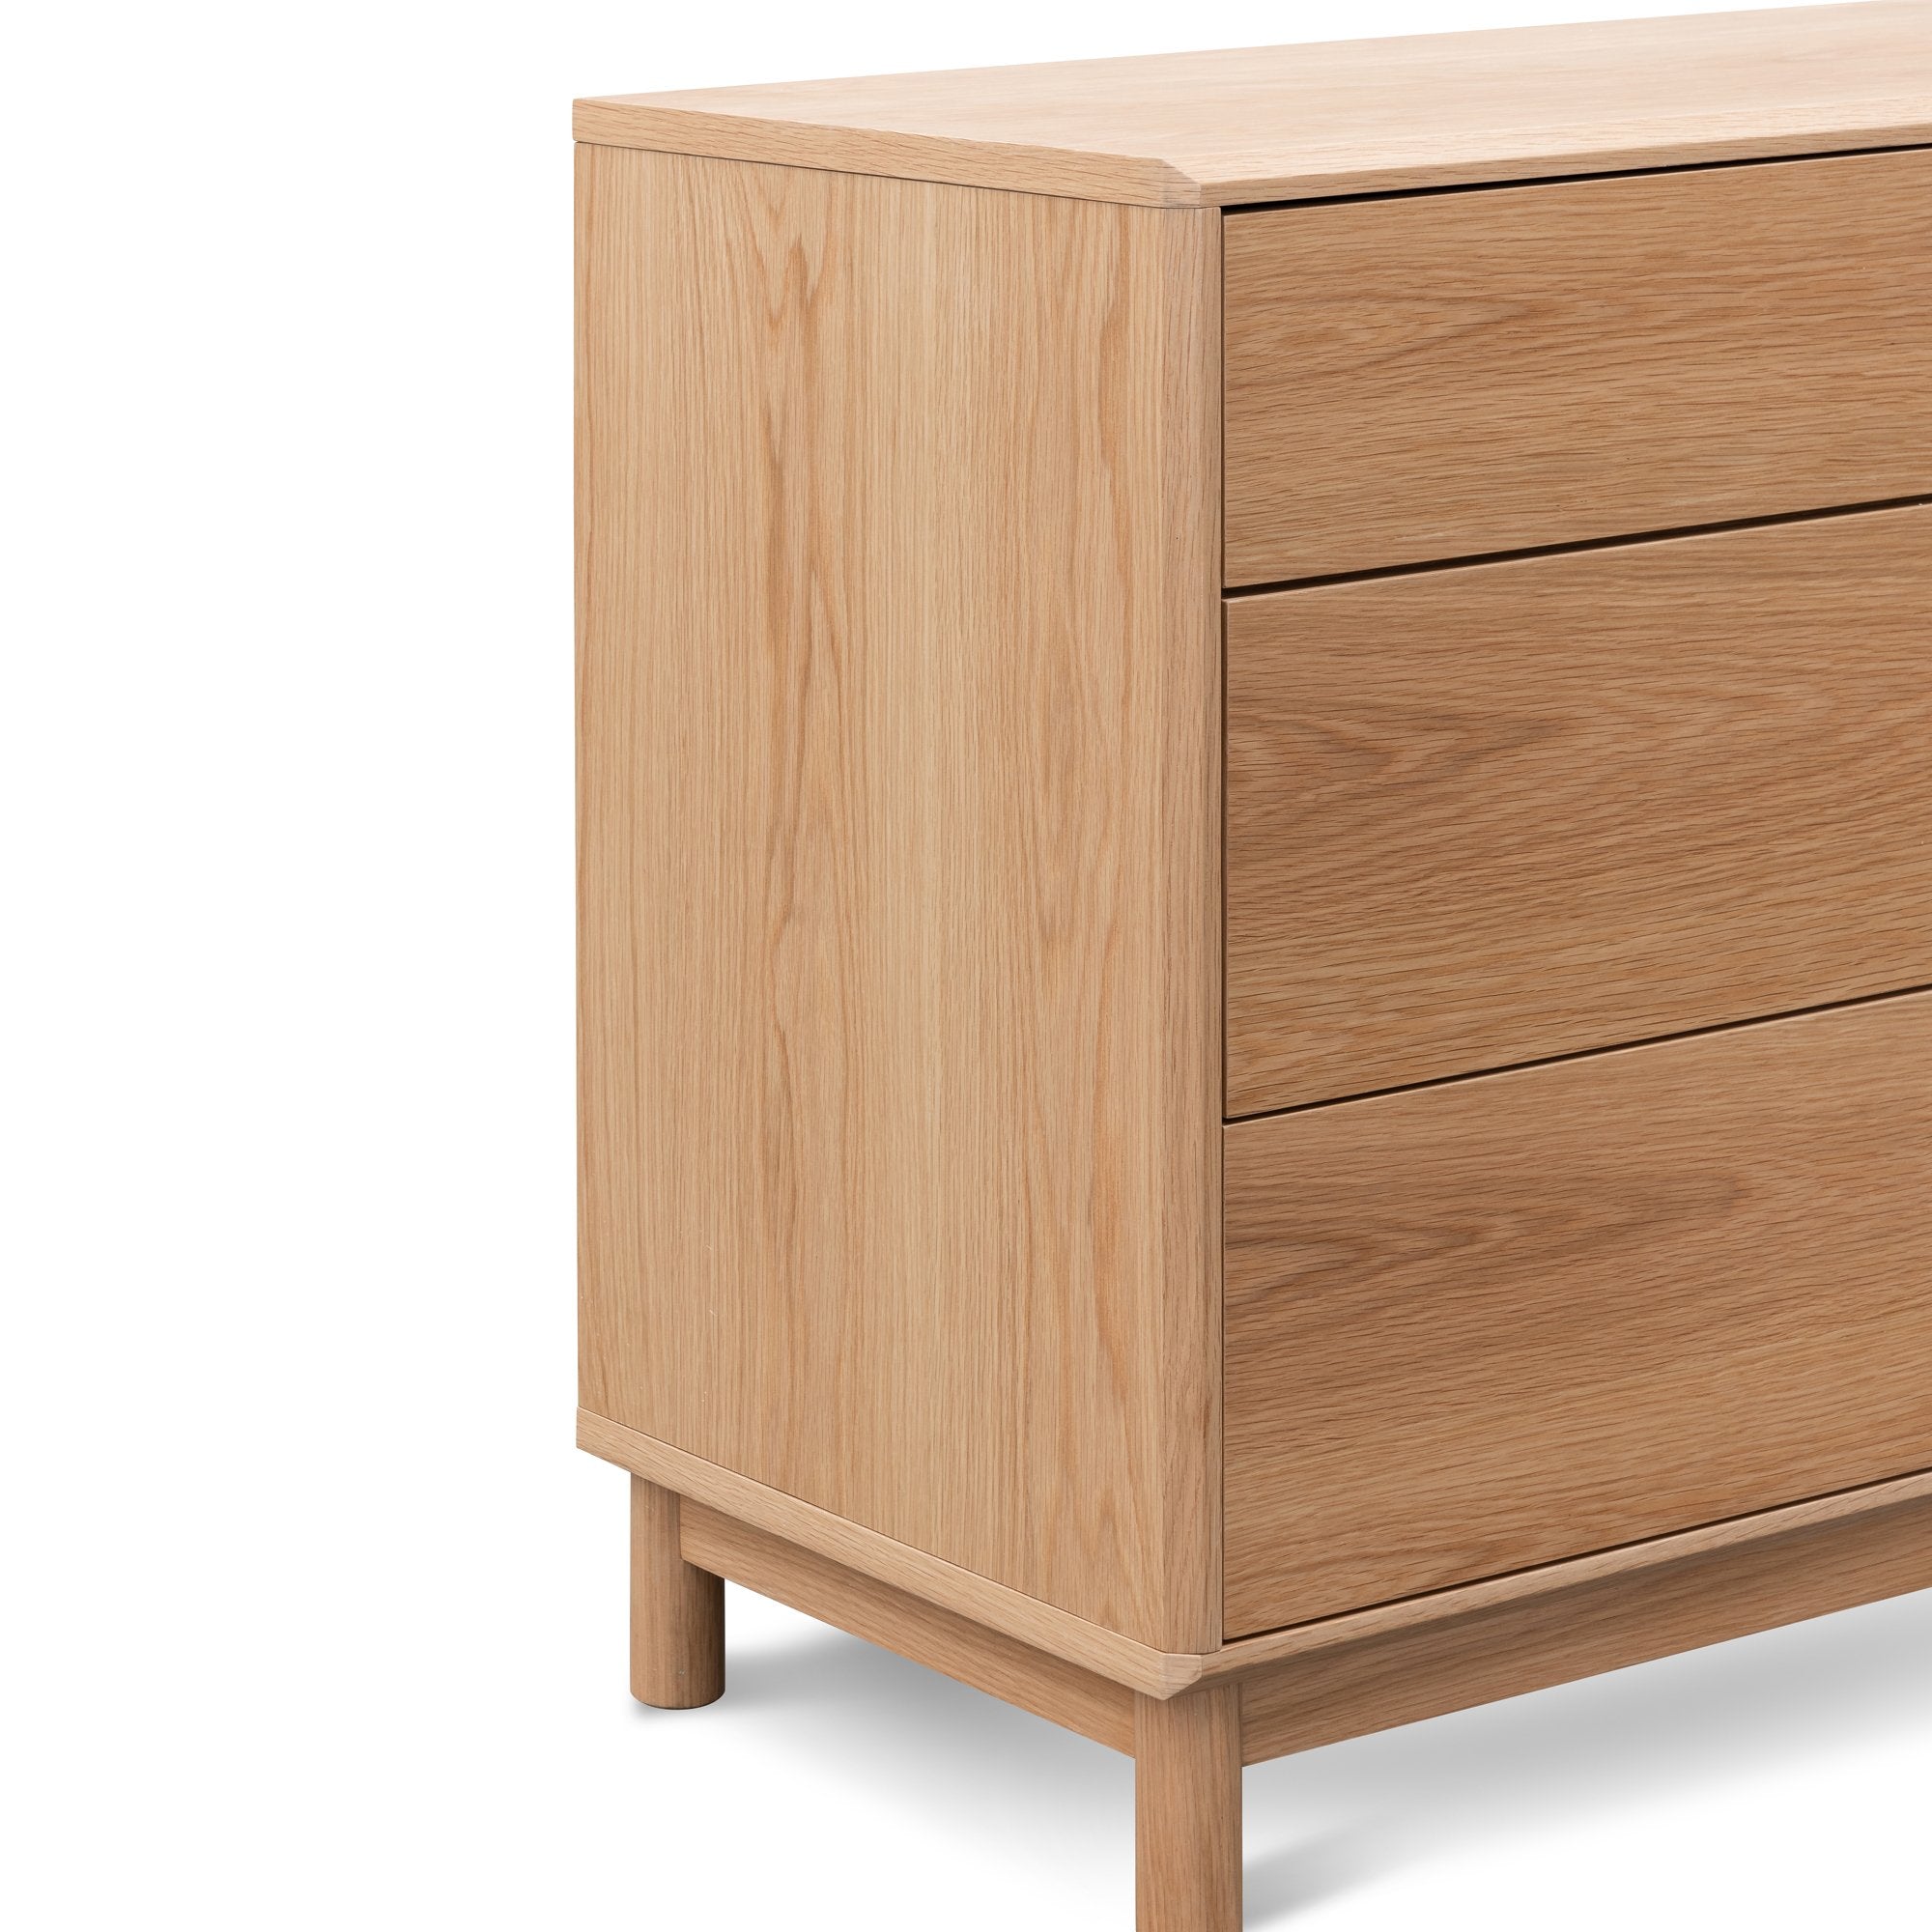 Evelyn 3 Drawers Dresser Unit - Natural Oak - Dressers